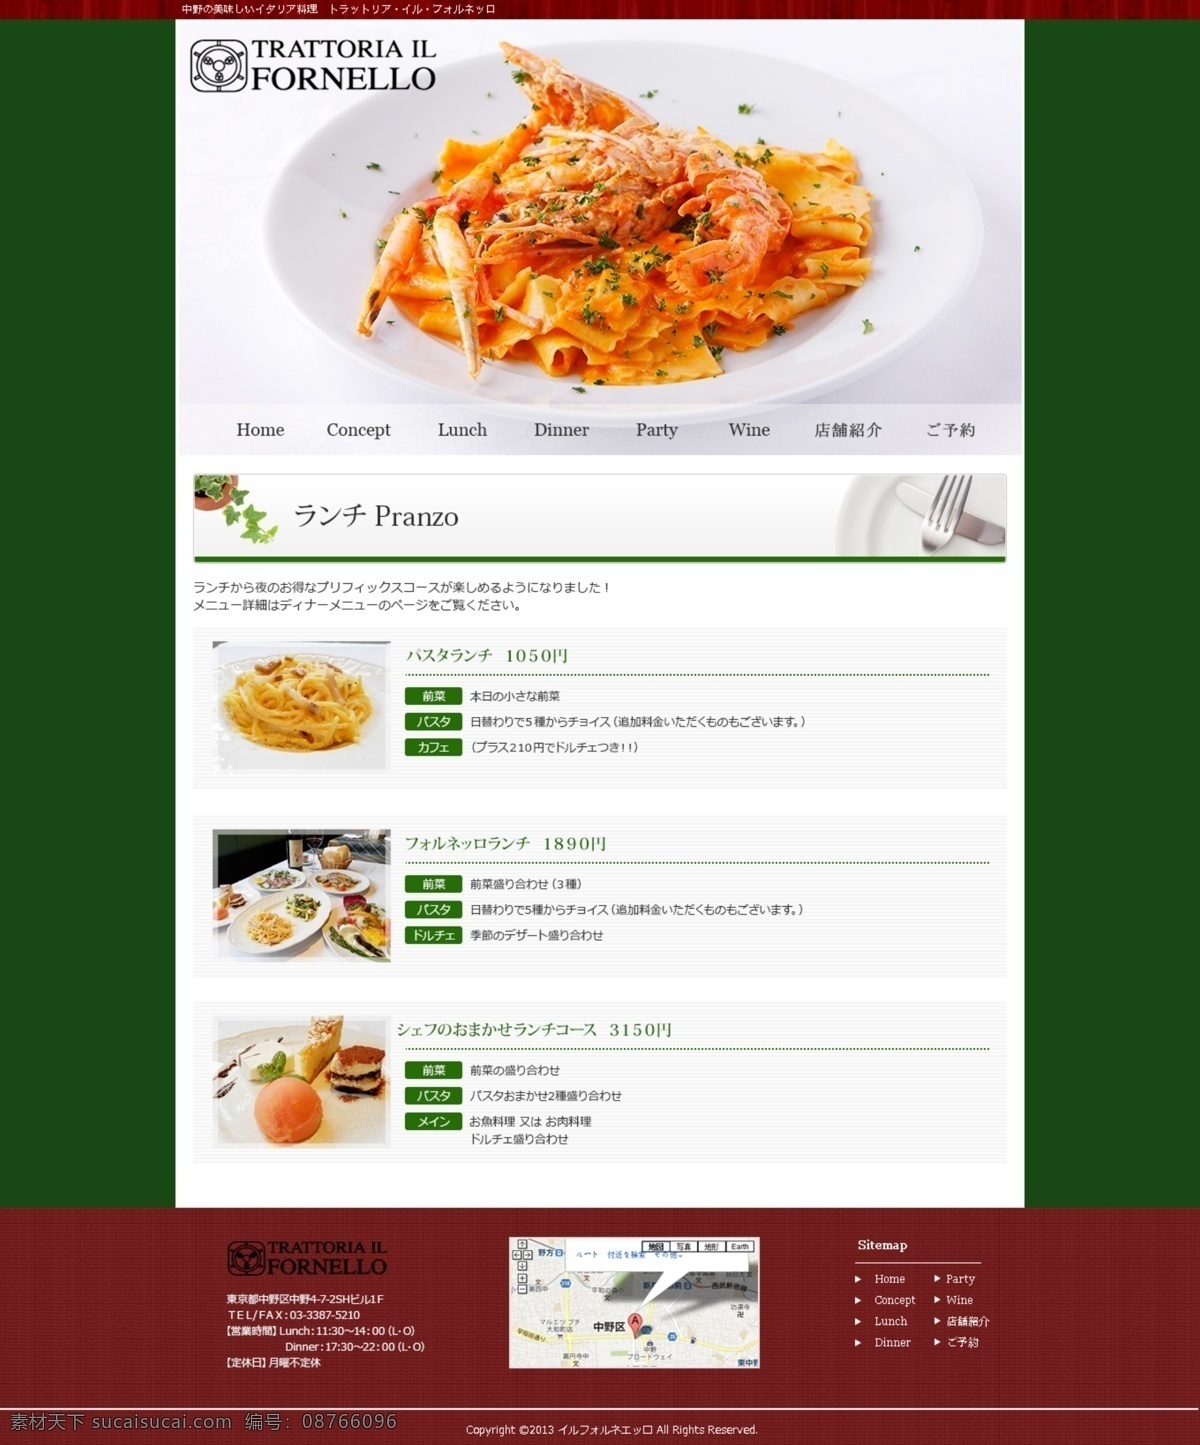 餐厅 料理 美食 食物 网页模板 西餐 源文件 中餐 饭店 子 页面 模板下载 饭店子页面 韩文模板 网页素材